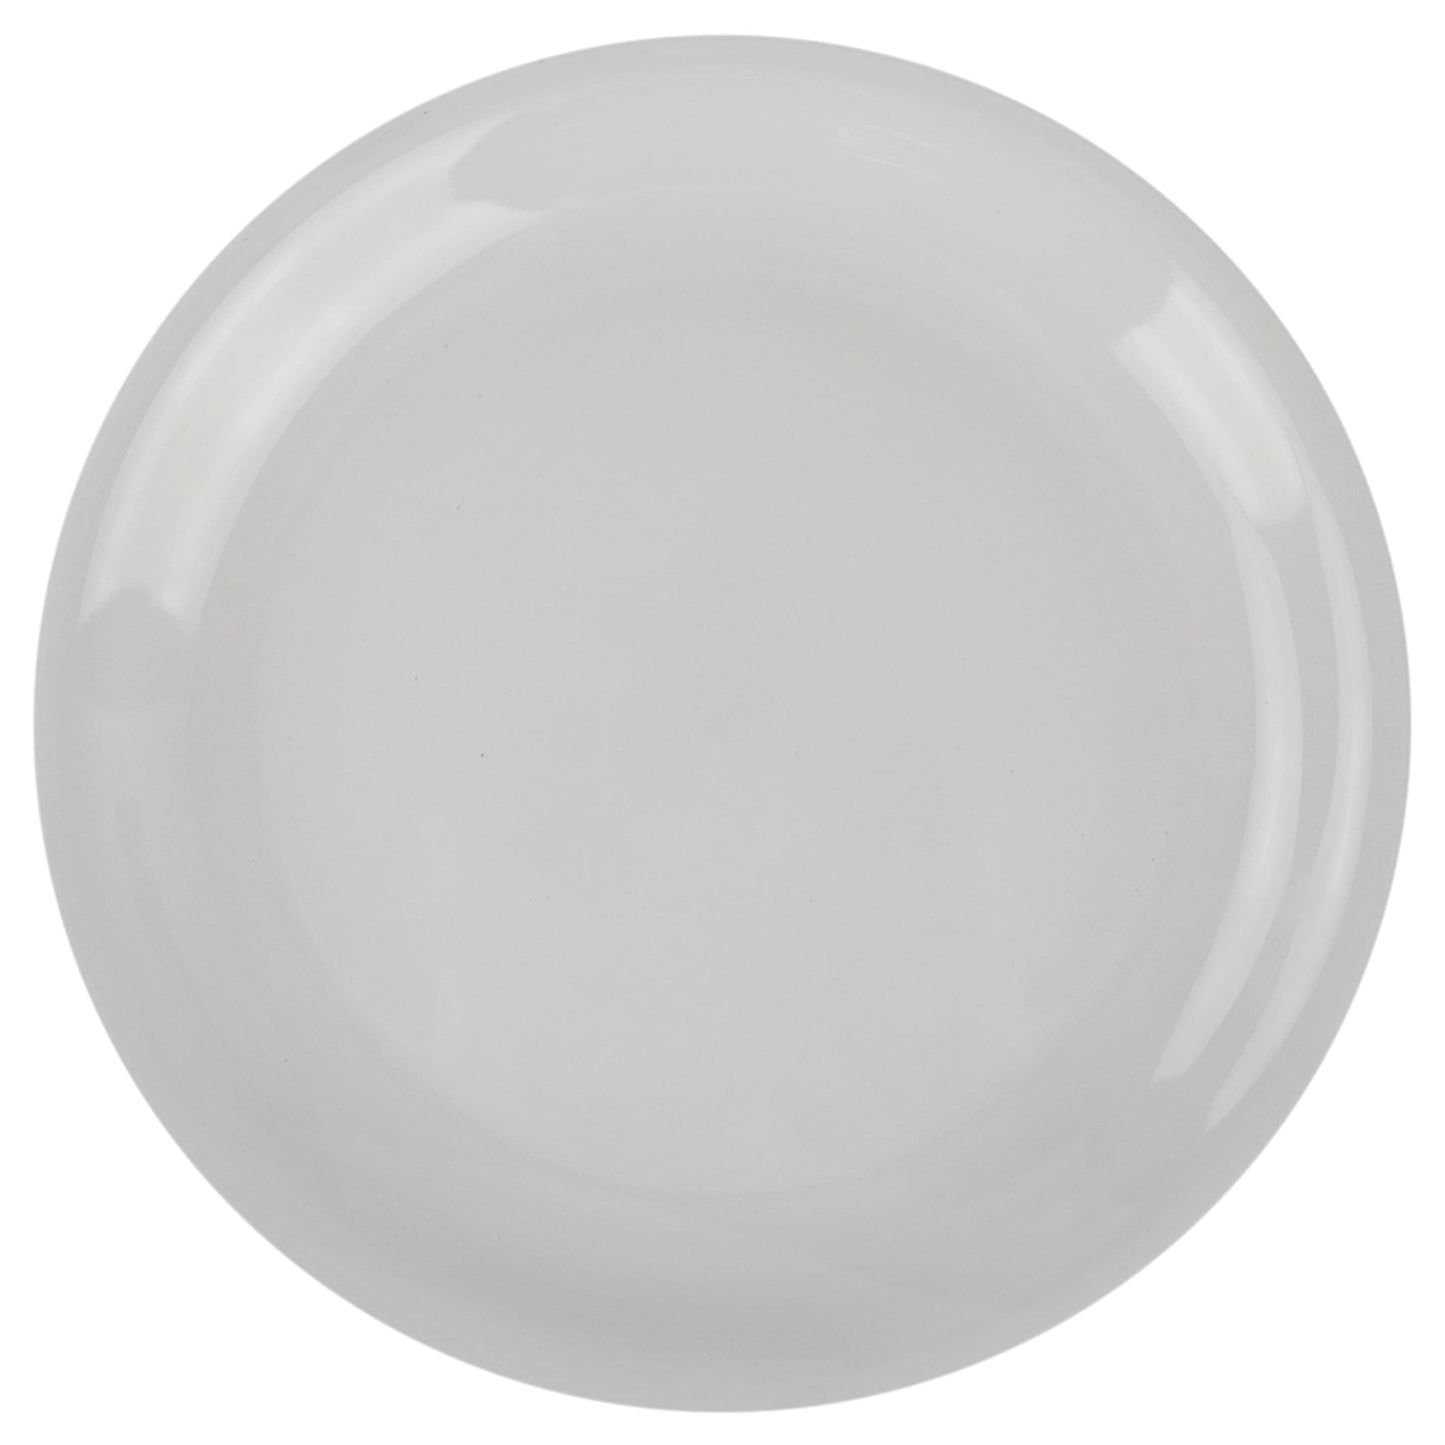 10.5" Ceramic Dinner Plate, White